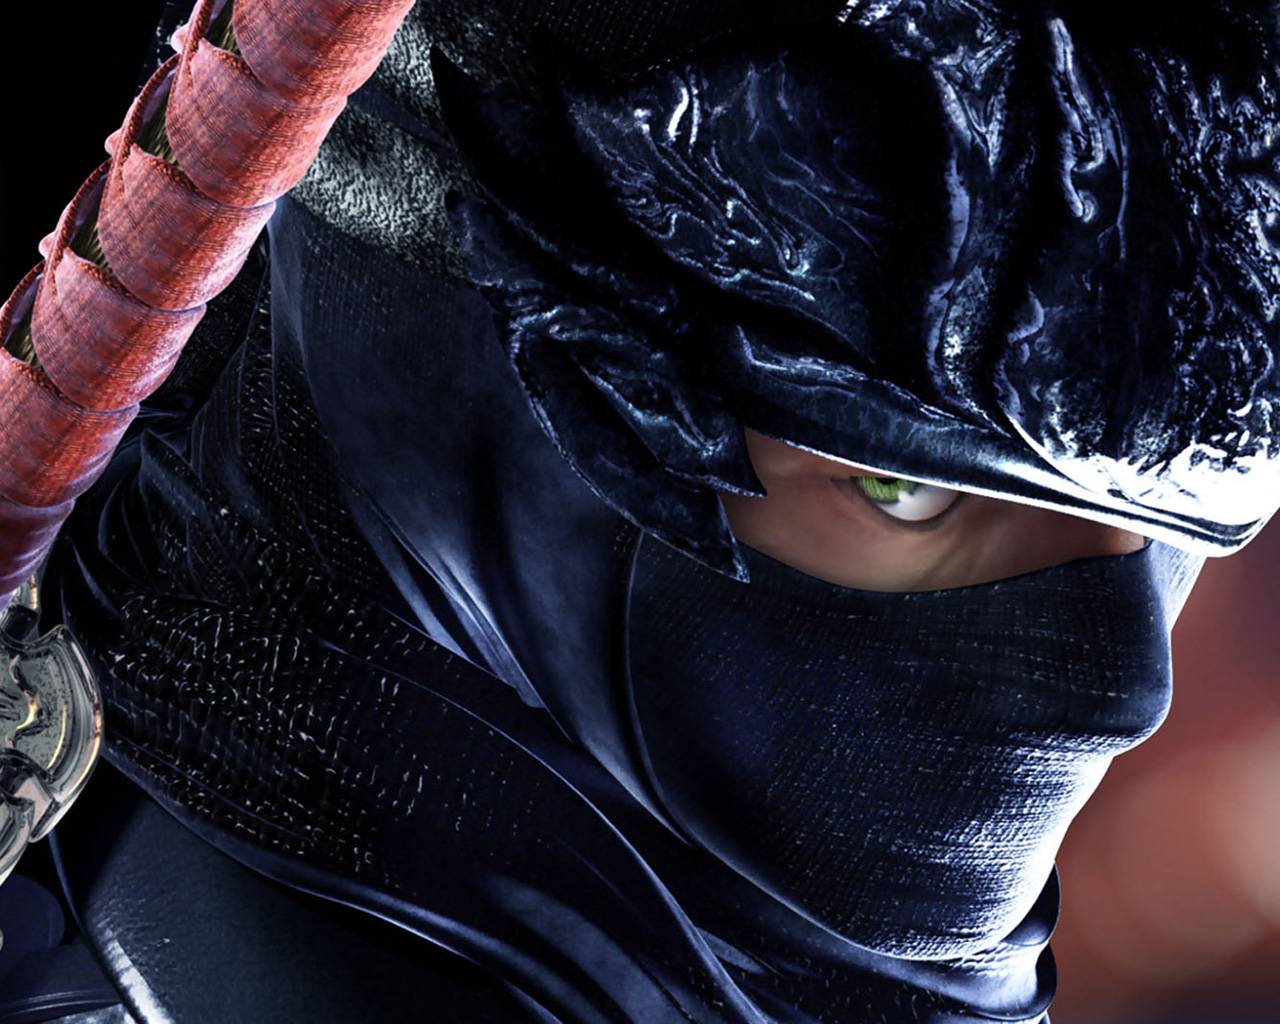 Picture Ninja Gaiden Wallpaper In HD Gamingbolt